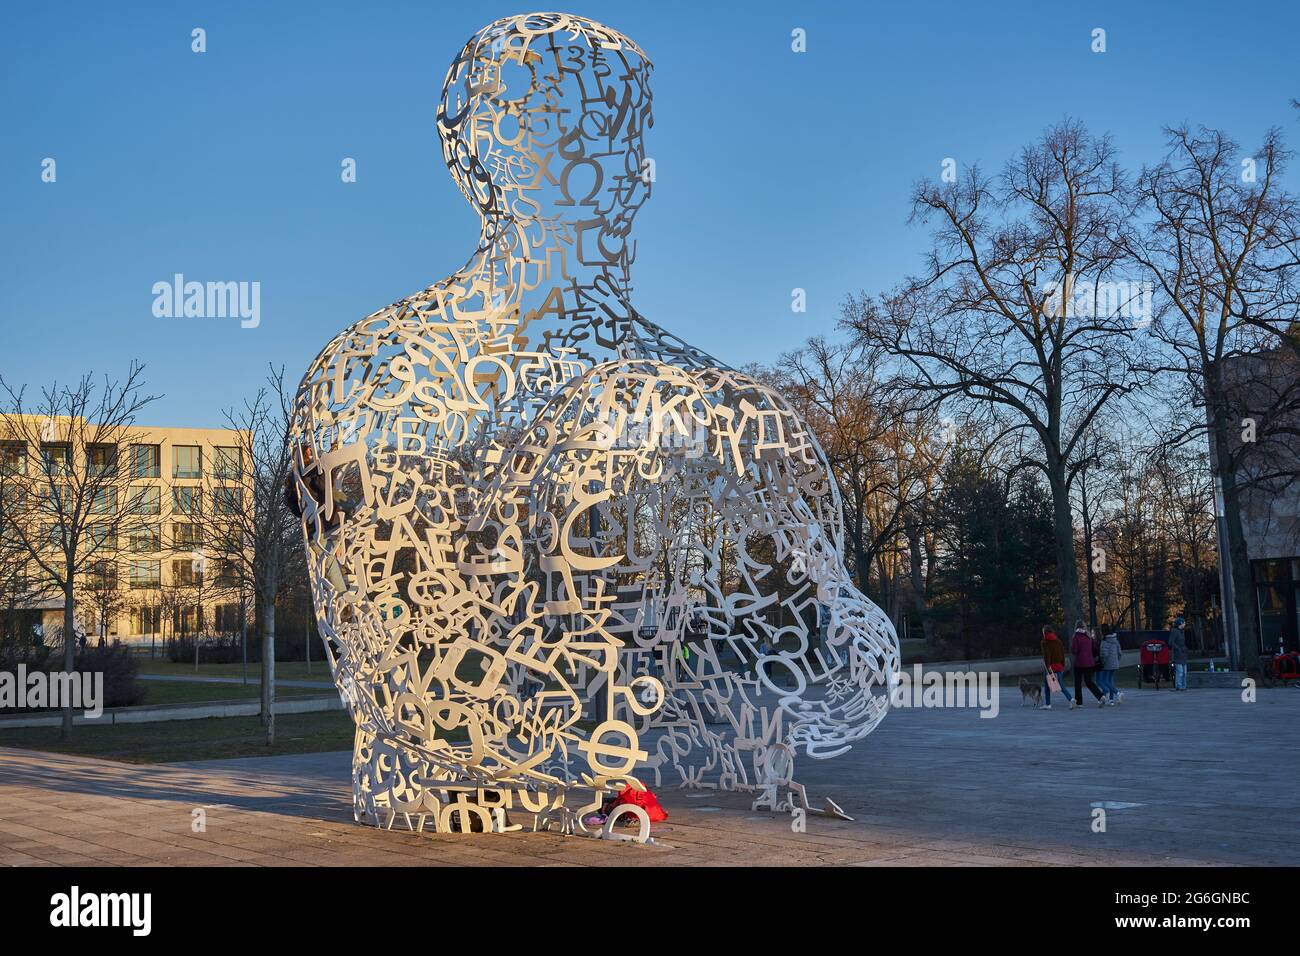 Body of Knowledge, Skulptur von Jaume  Plensa, Theodor W. Adorno-Platz, Westend Campus, Goethe-Universität, Frankfurt am Main, Deutschland Stock Photo